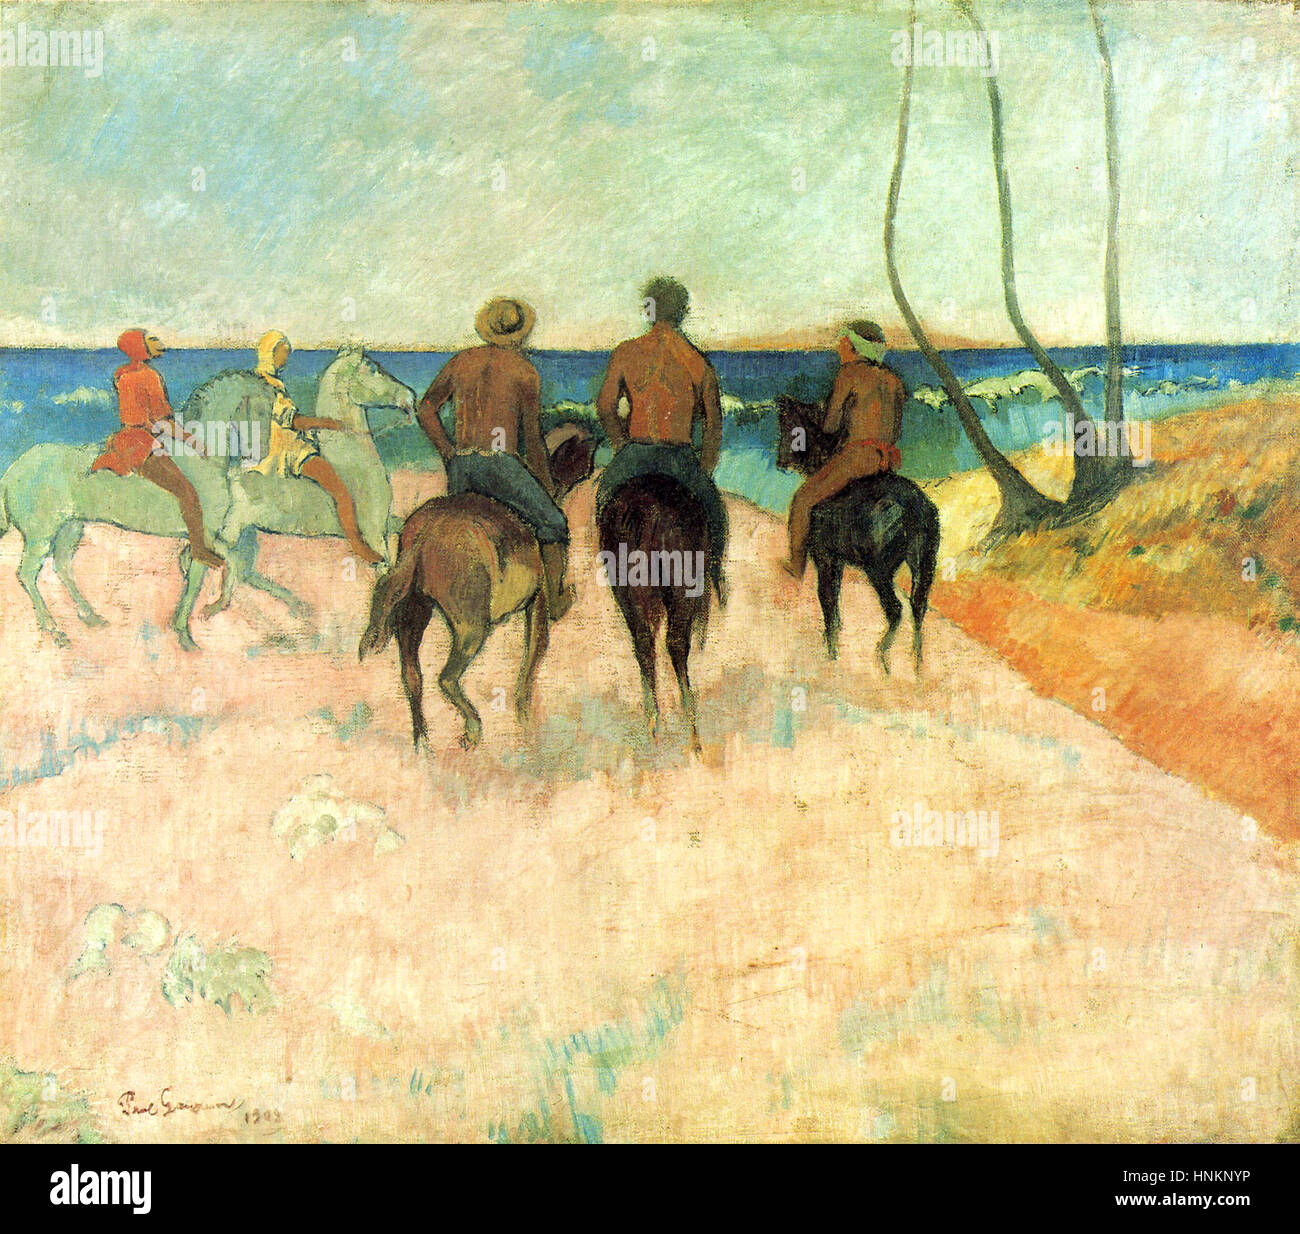 Cavaliers sur la plage, de Paul Gauguin, 1902 Banque D'Images